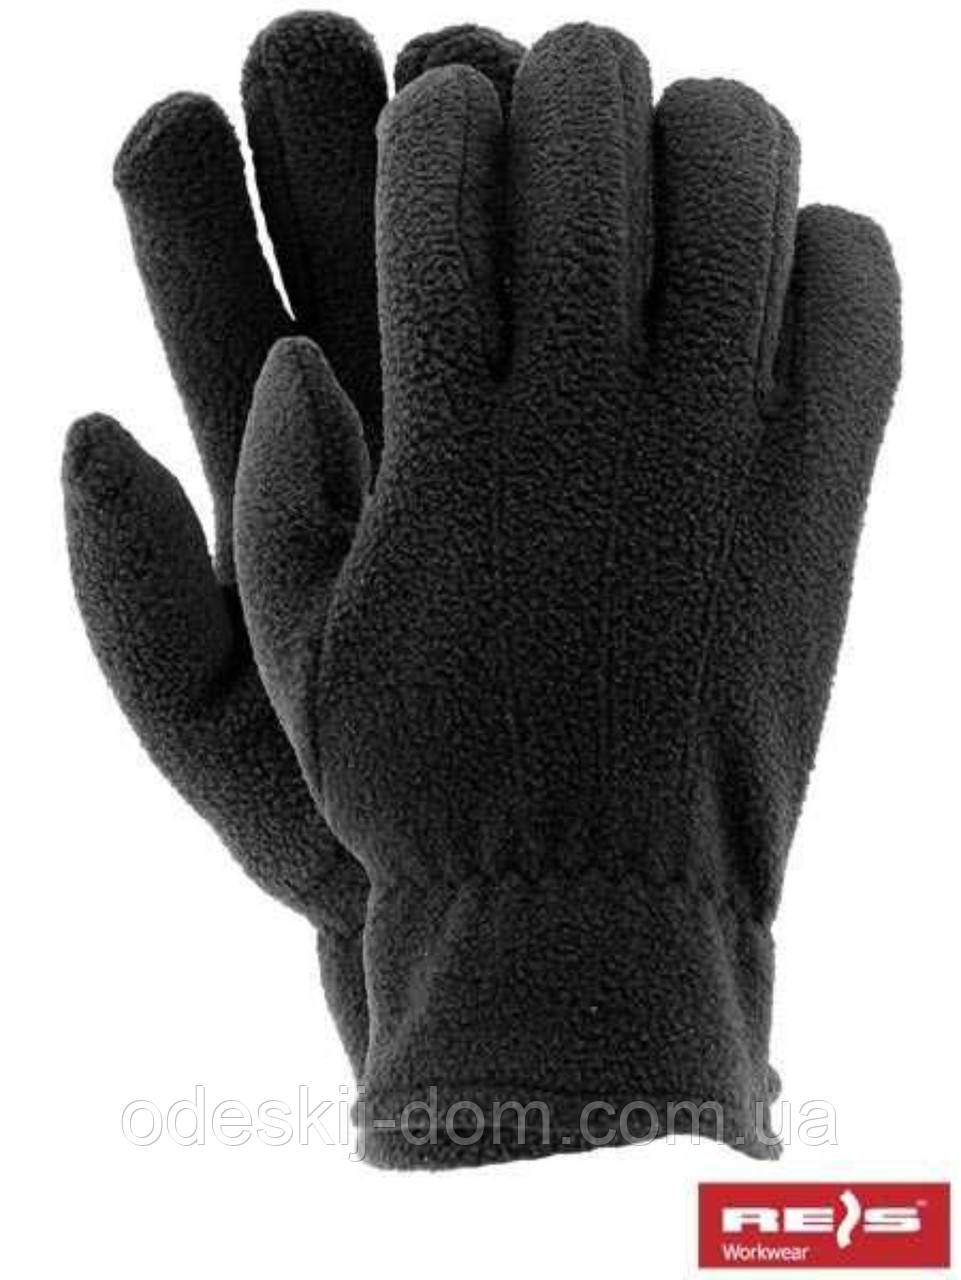 Чоловіча флісова одинарна чорна перчатка